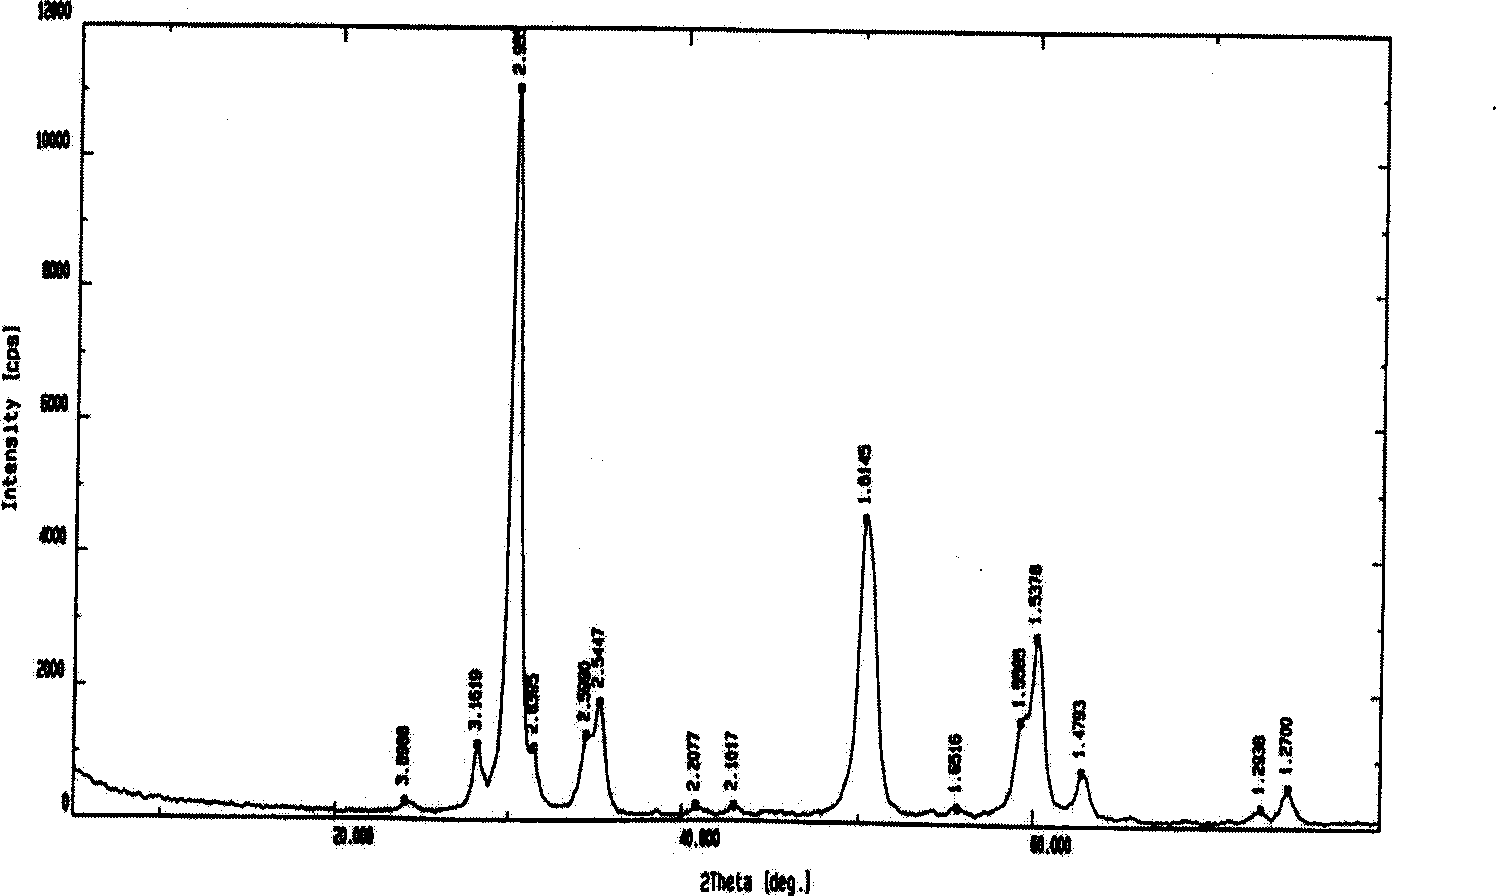 Micrometer level porous zirconium dioxide spherical granules